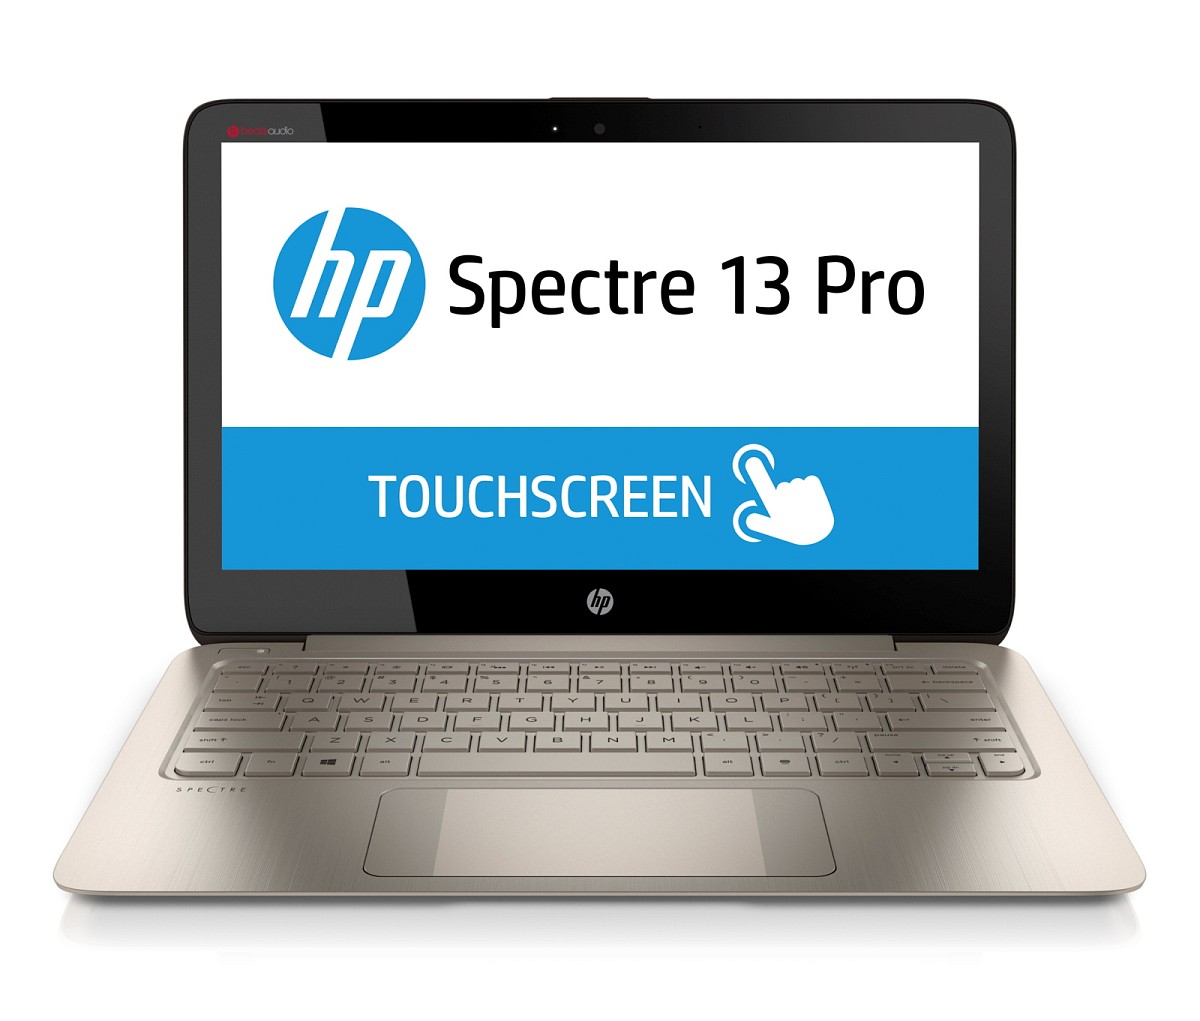 HP Spectre 13 Pro Ultrabook (F1N42EA)